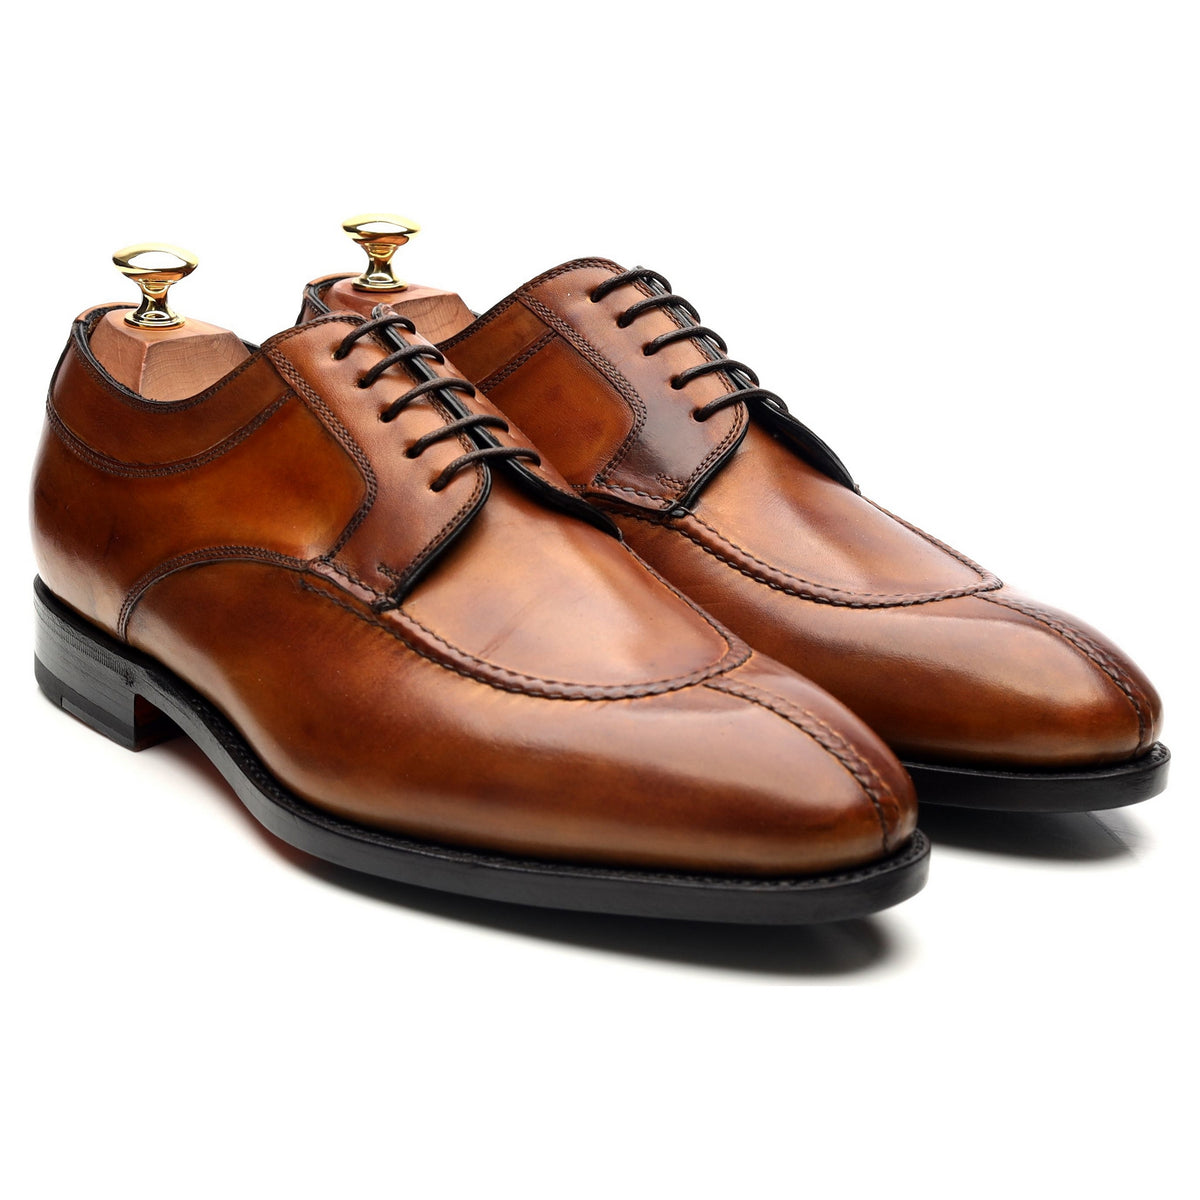 Authentic New Men's Bontoni Blue Suede Double Monk Strap Shoes,EU41/US8 |  eBay